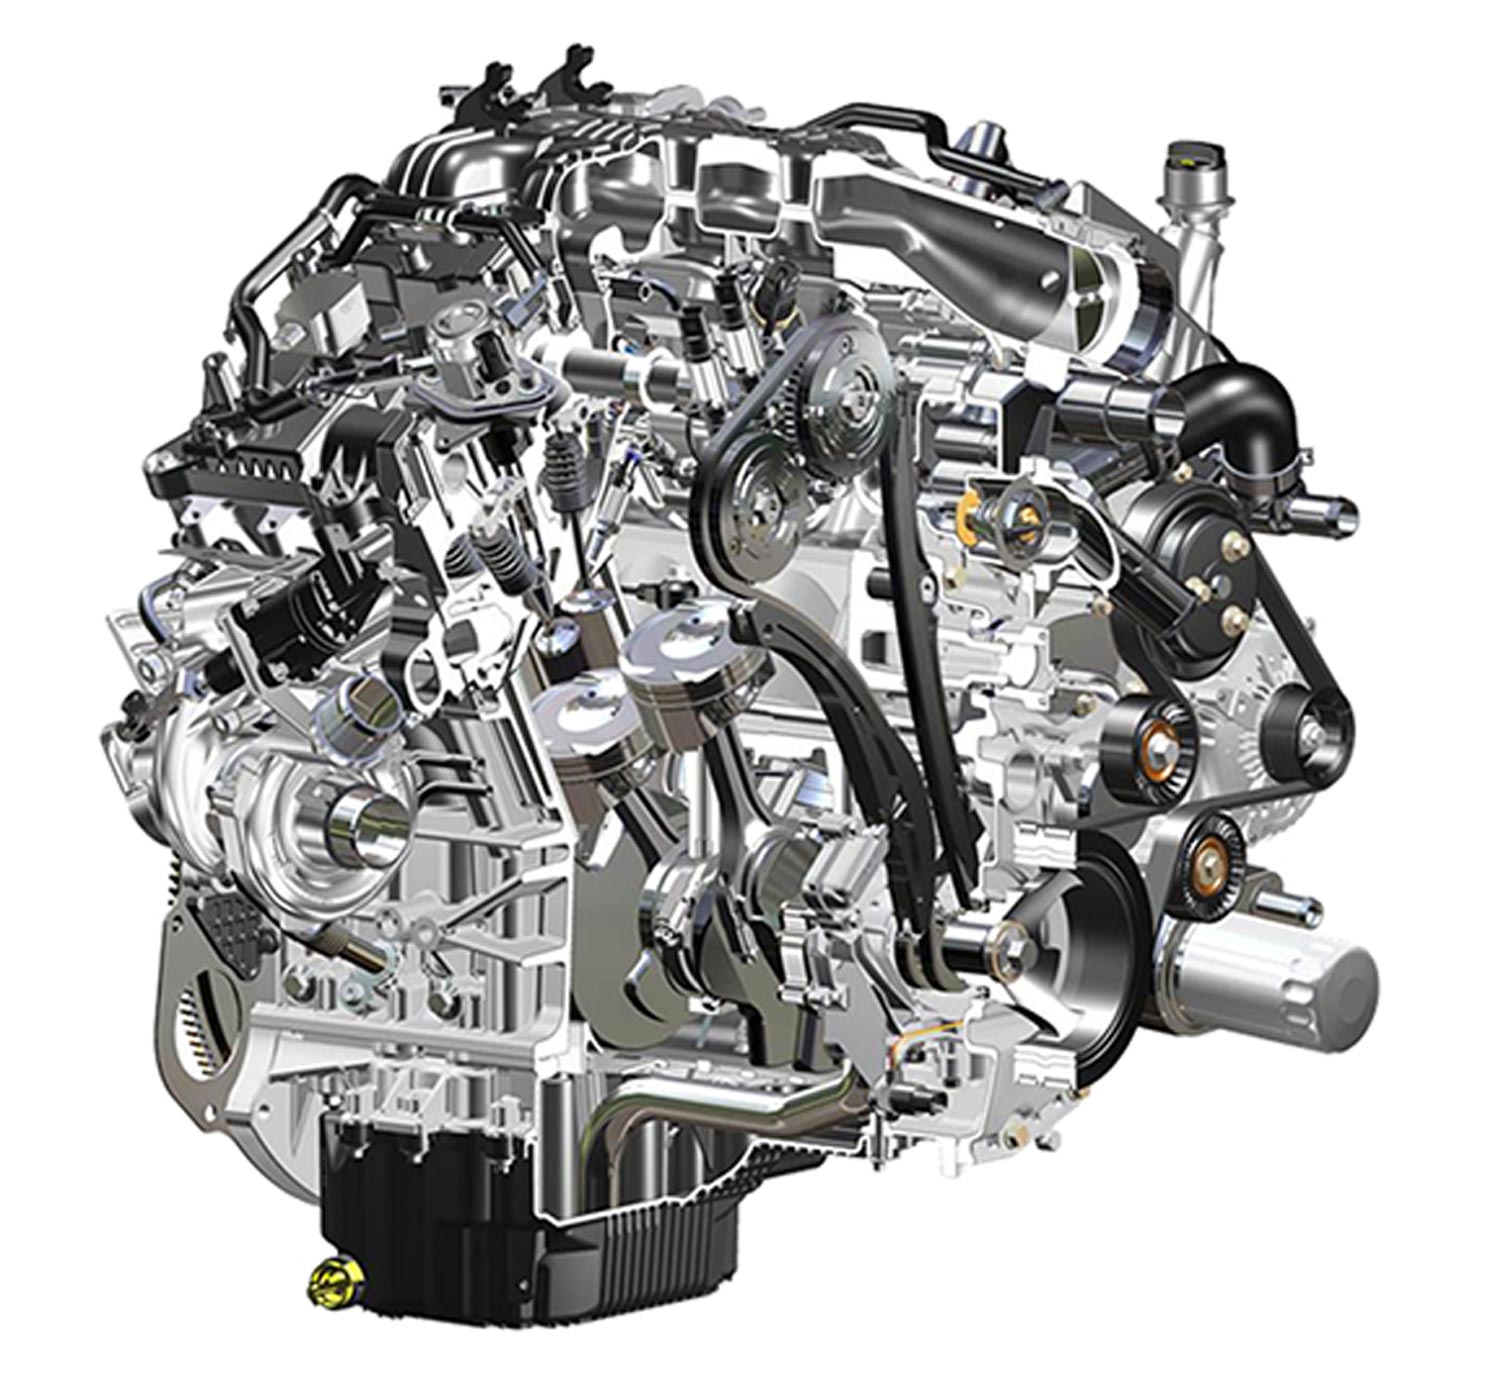 Ford’s 3.5-liter EcoBoost engine